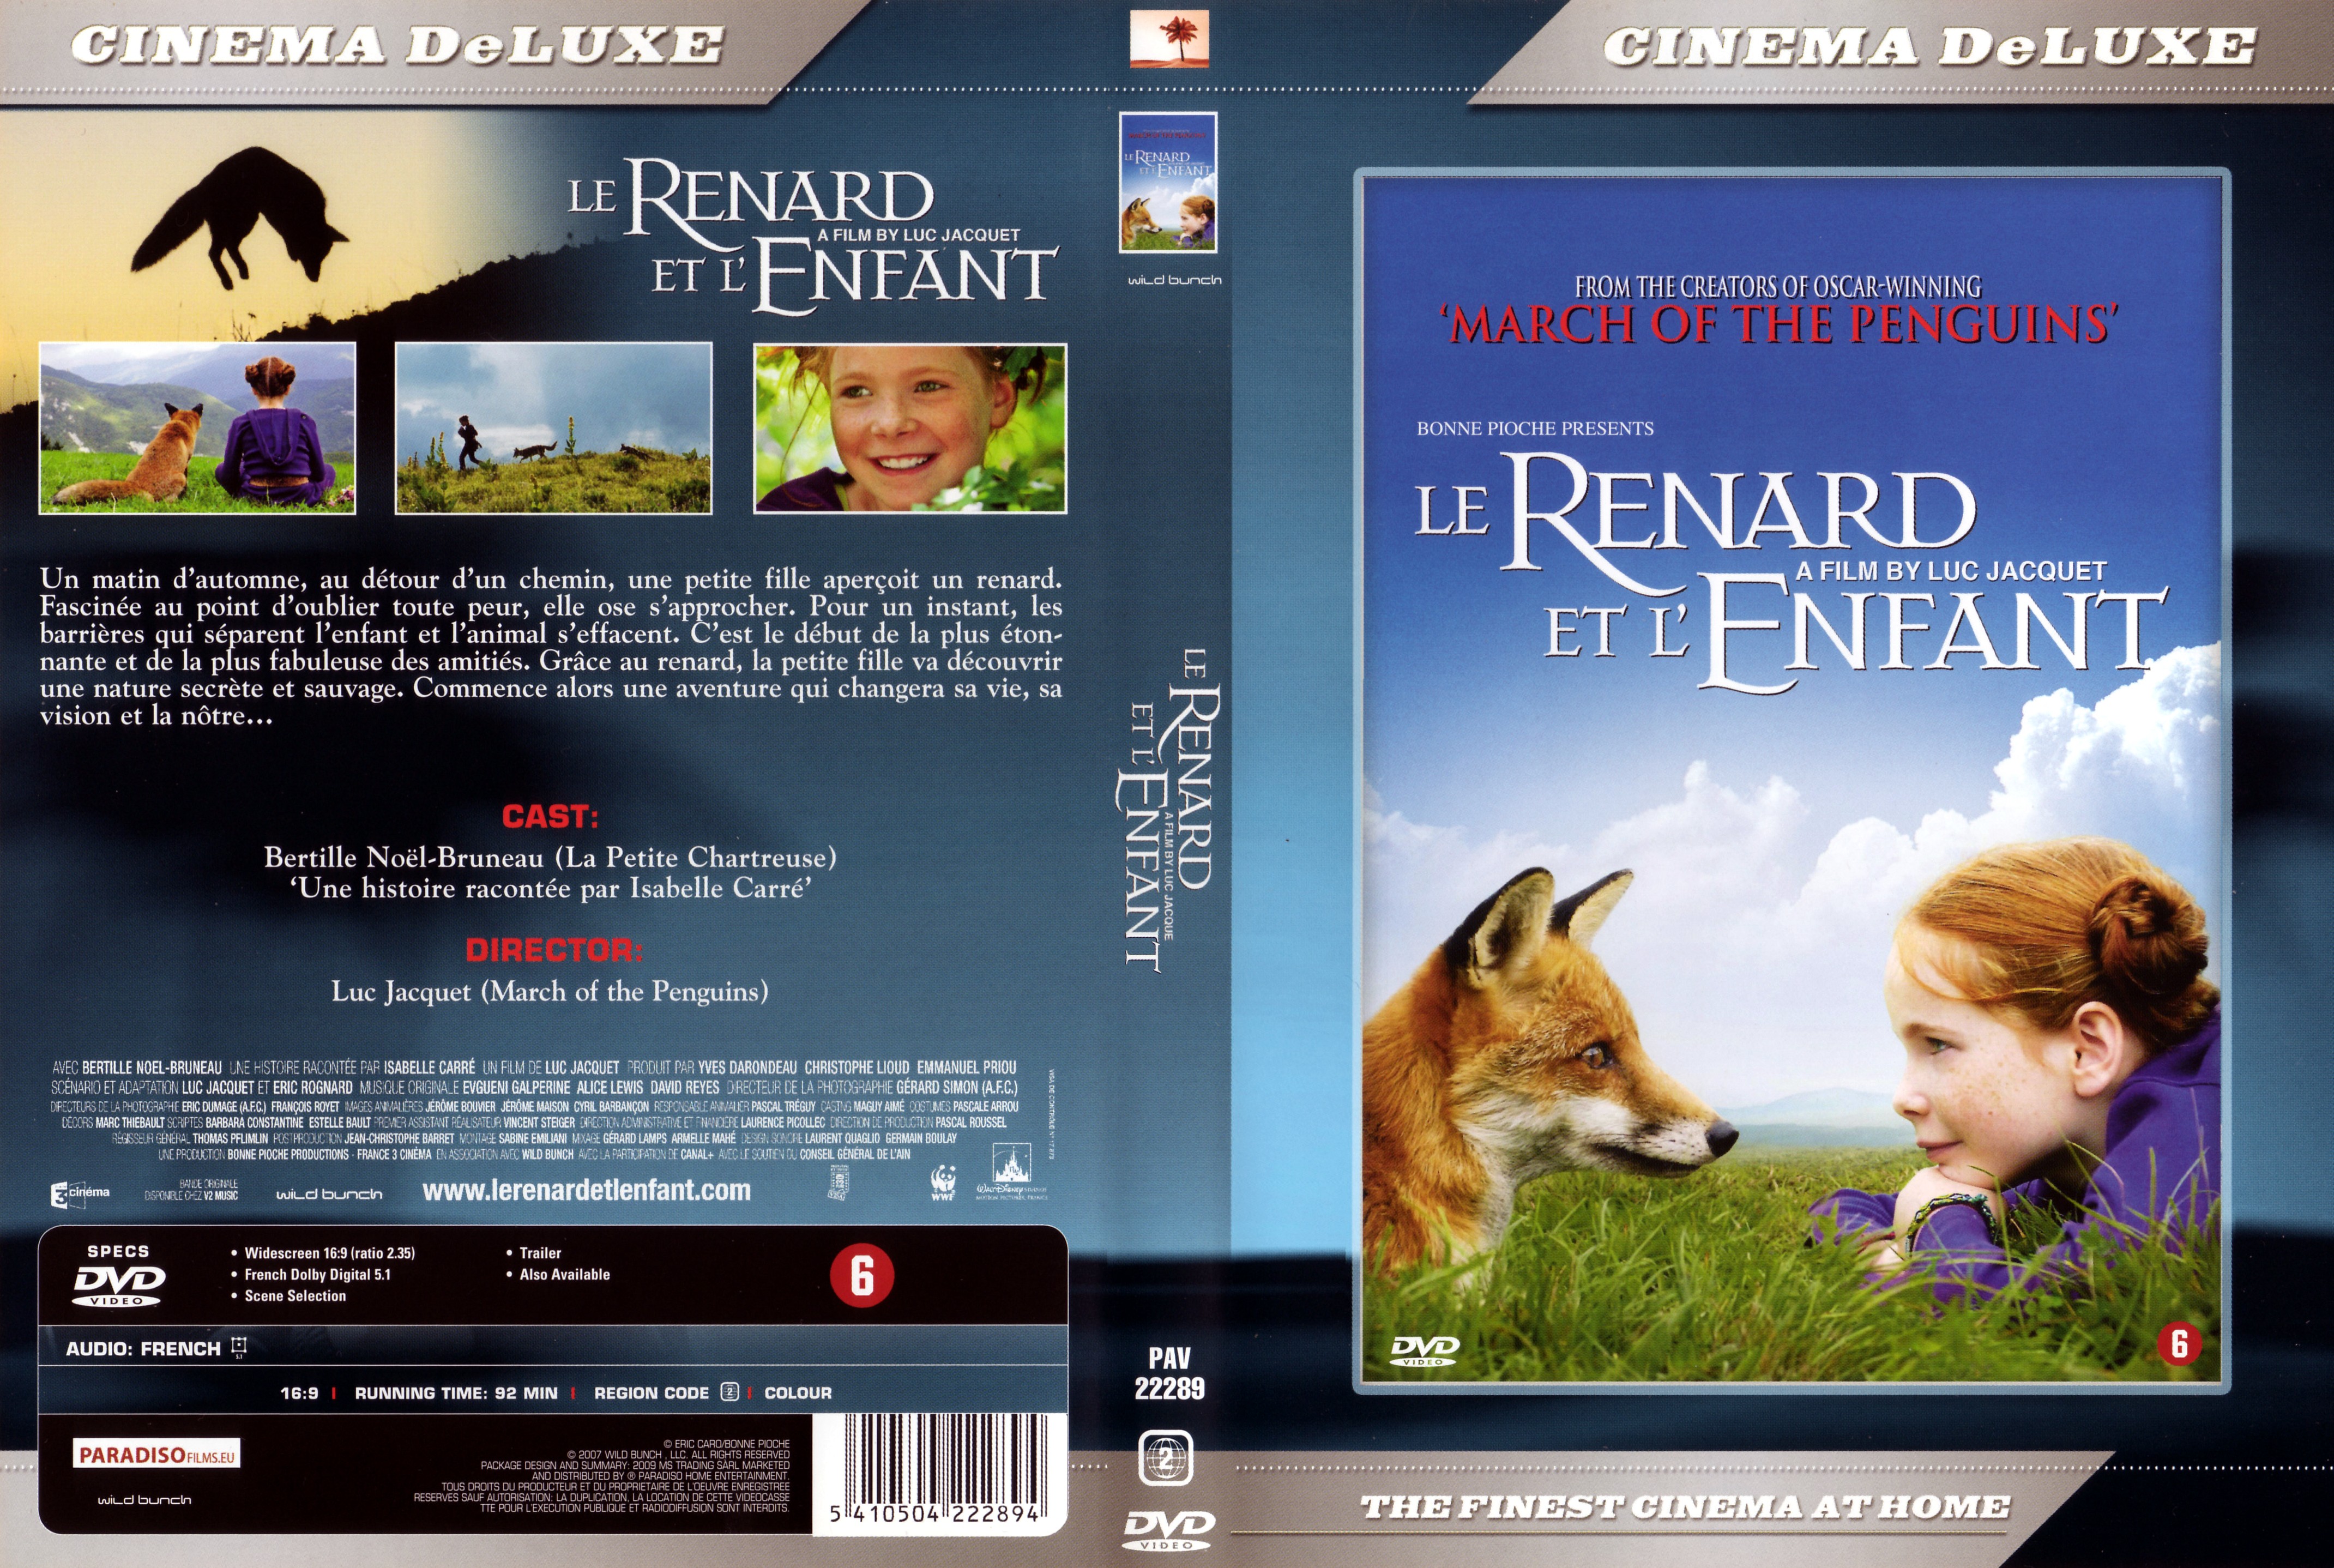 Jaquette DVD Le renard et l